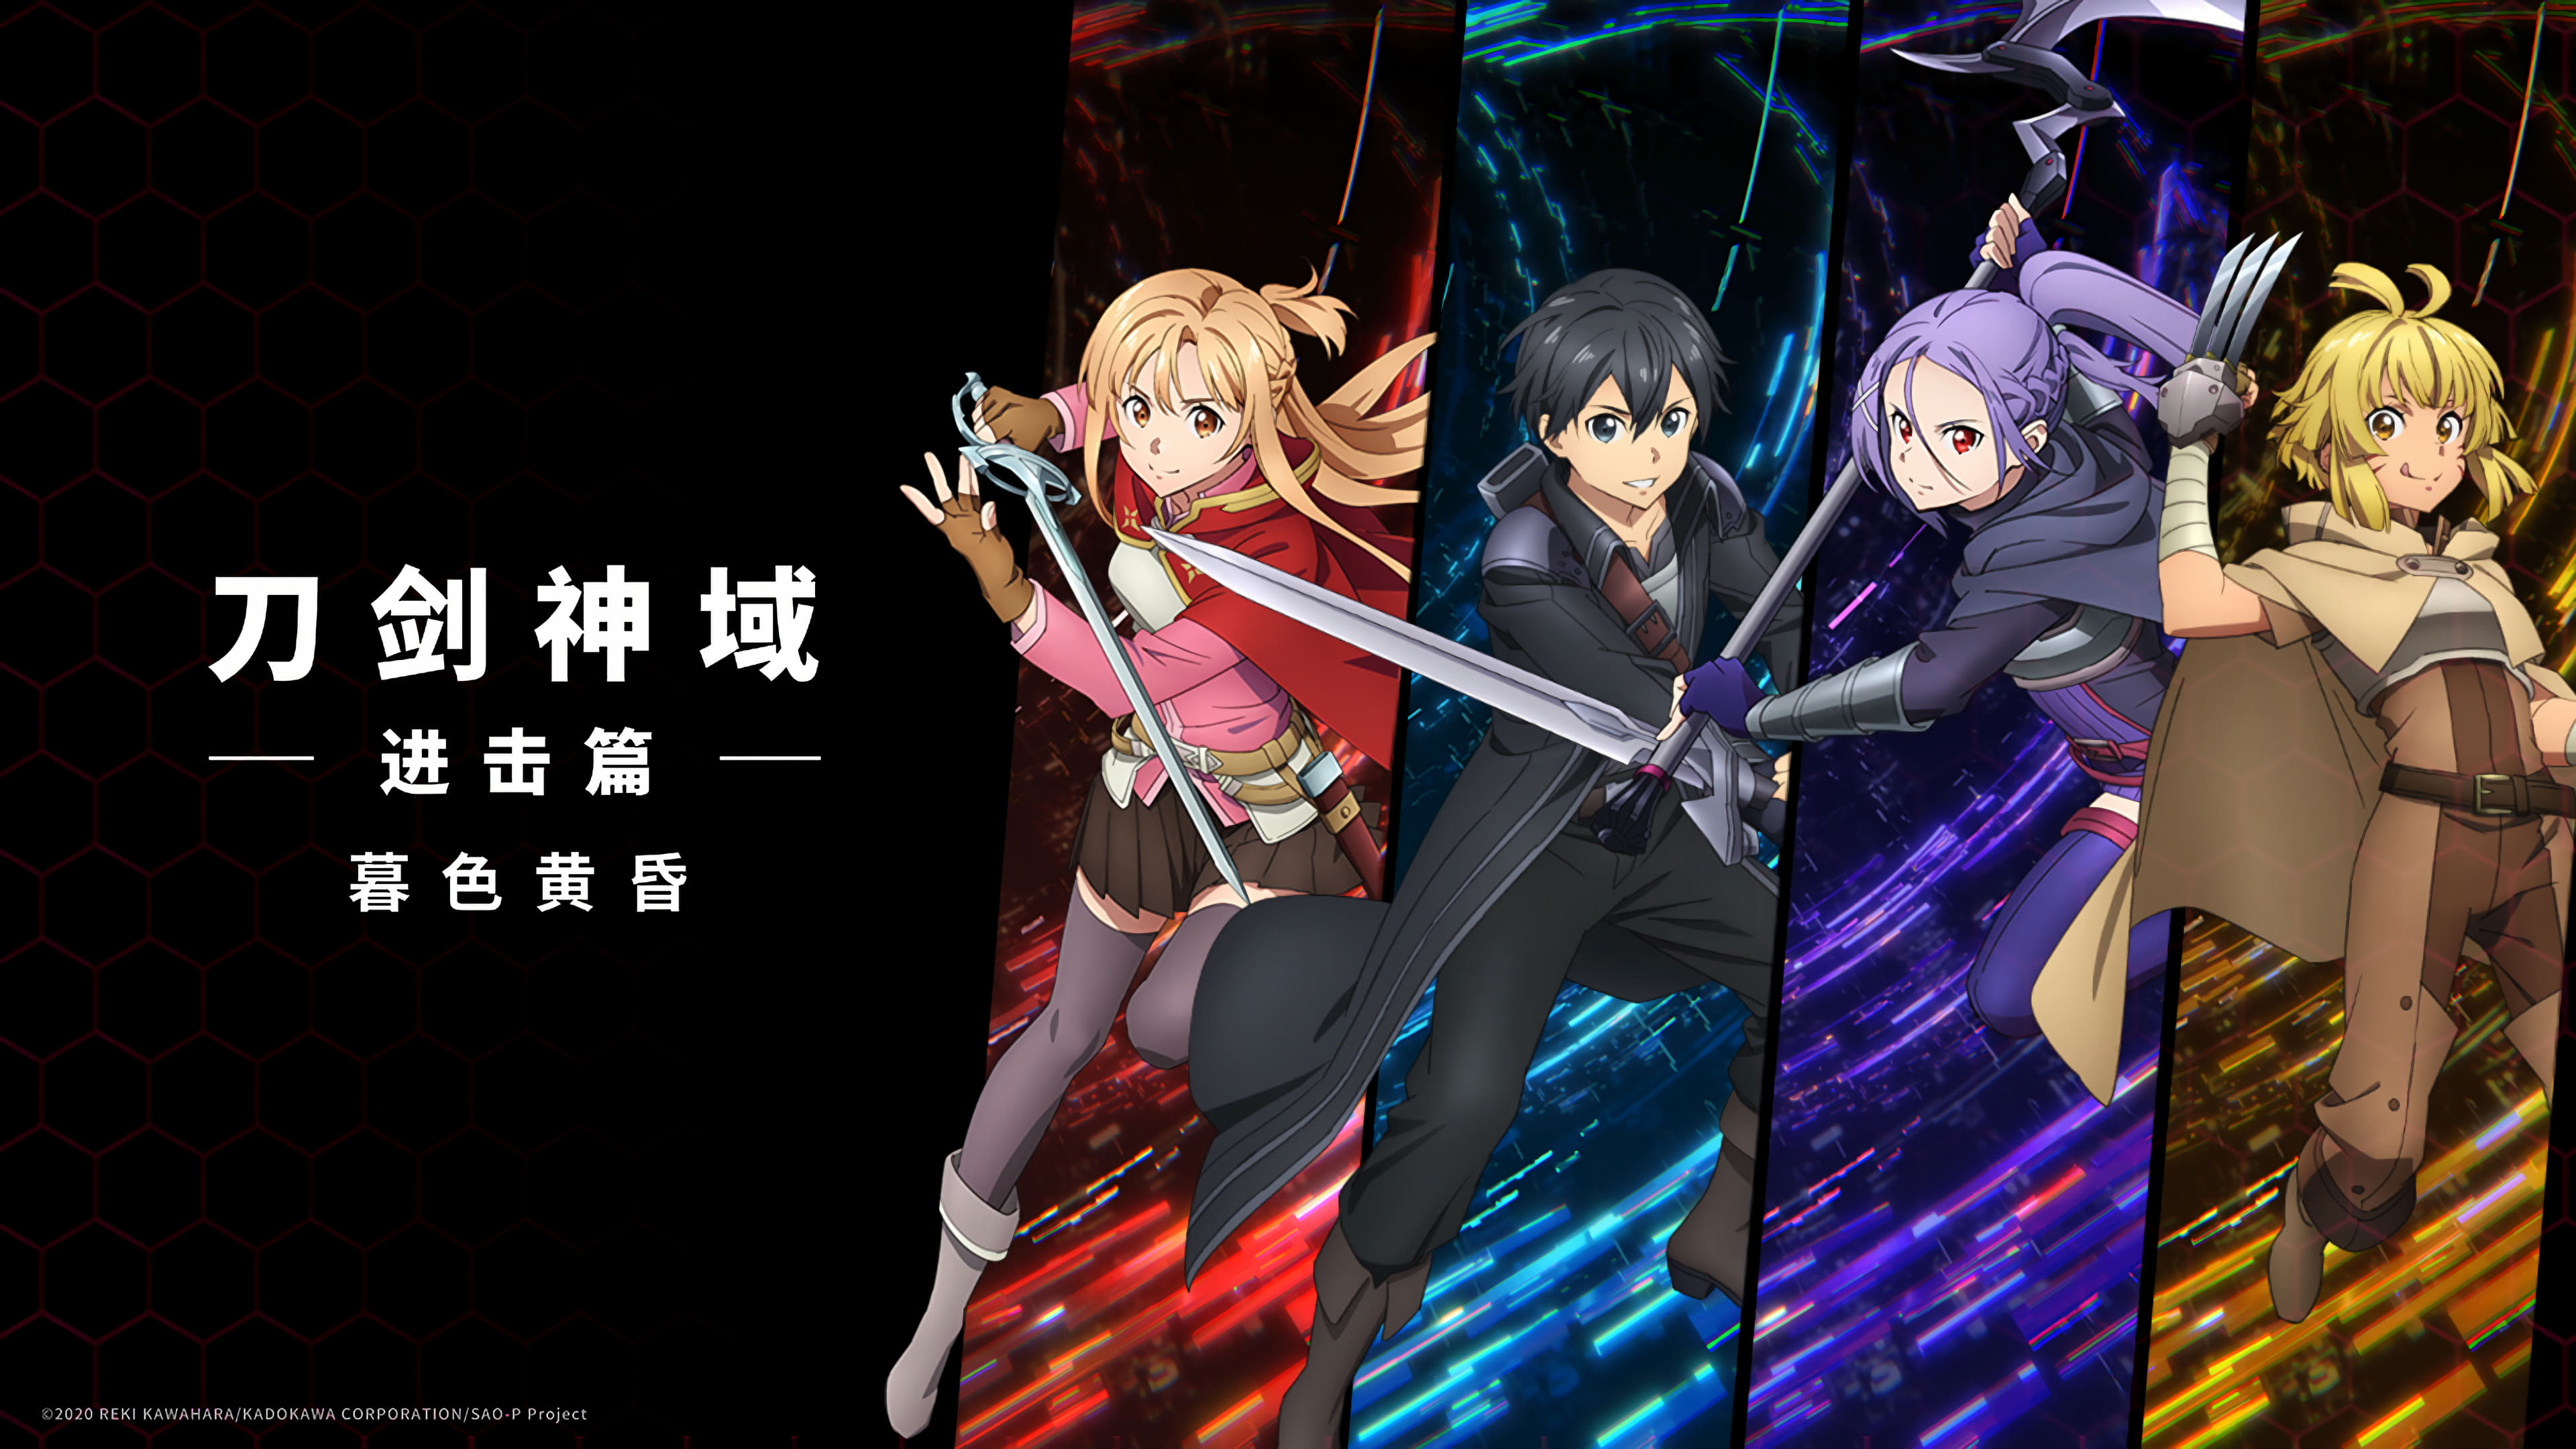 Anime Sword Art Online 4k Ultra HD Wallpaper by 海ノつきな